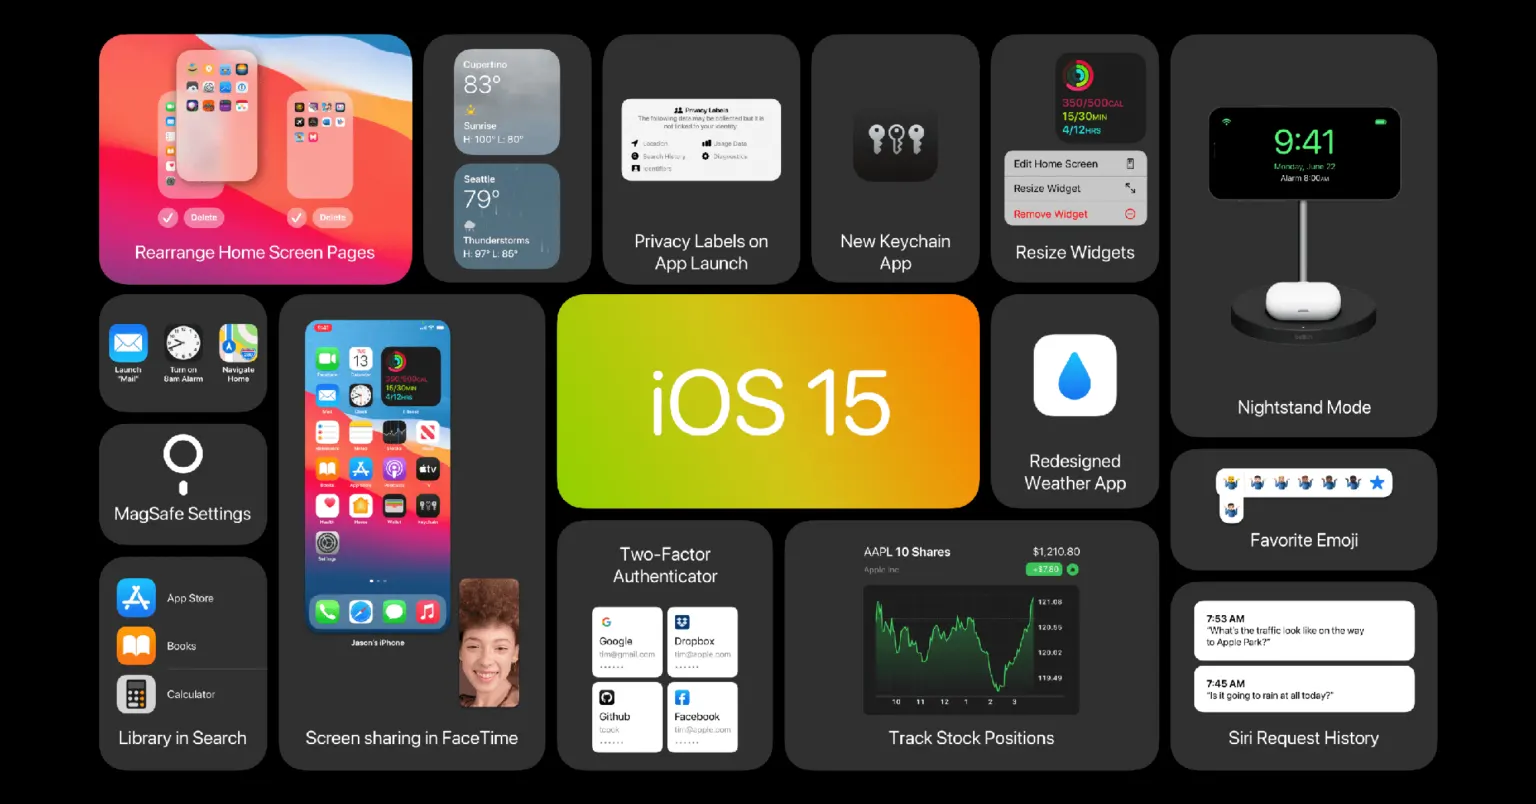 [WWDC21] Danh sách
chính thức các thiết bị hỗ trợ cập nhật iOS 15, iPadOS 15,
watchOS 8, macOS Monterey